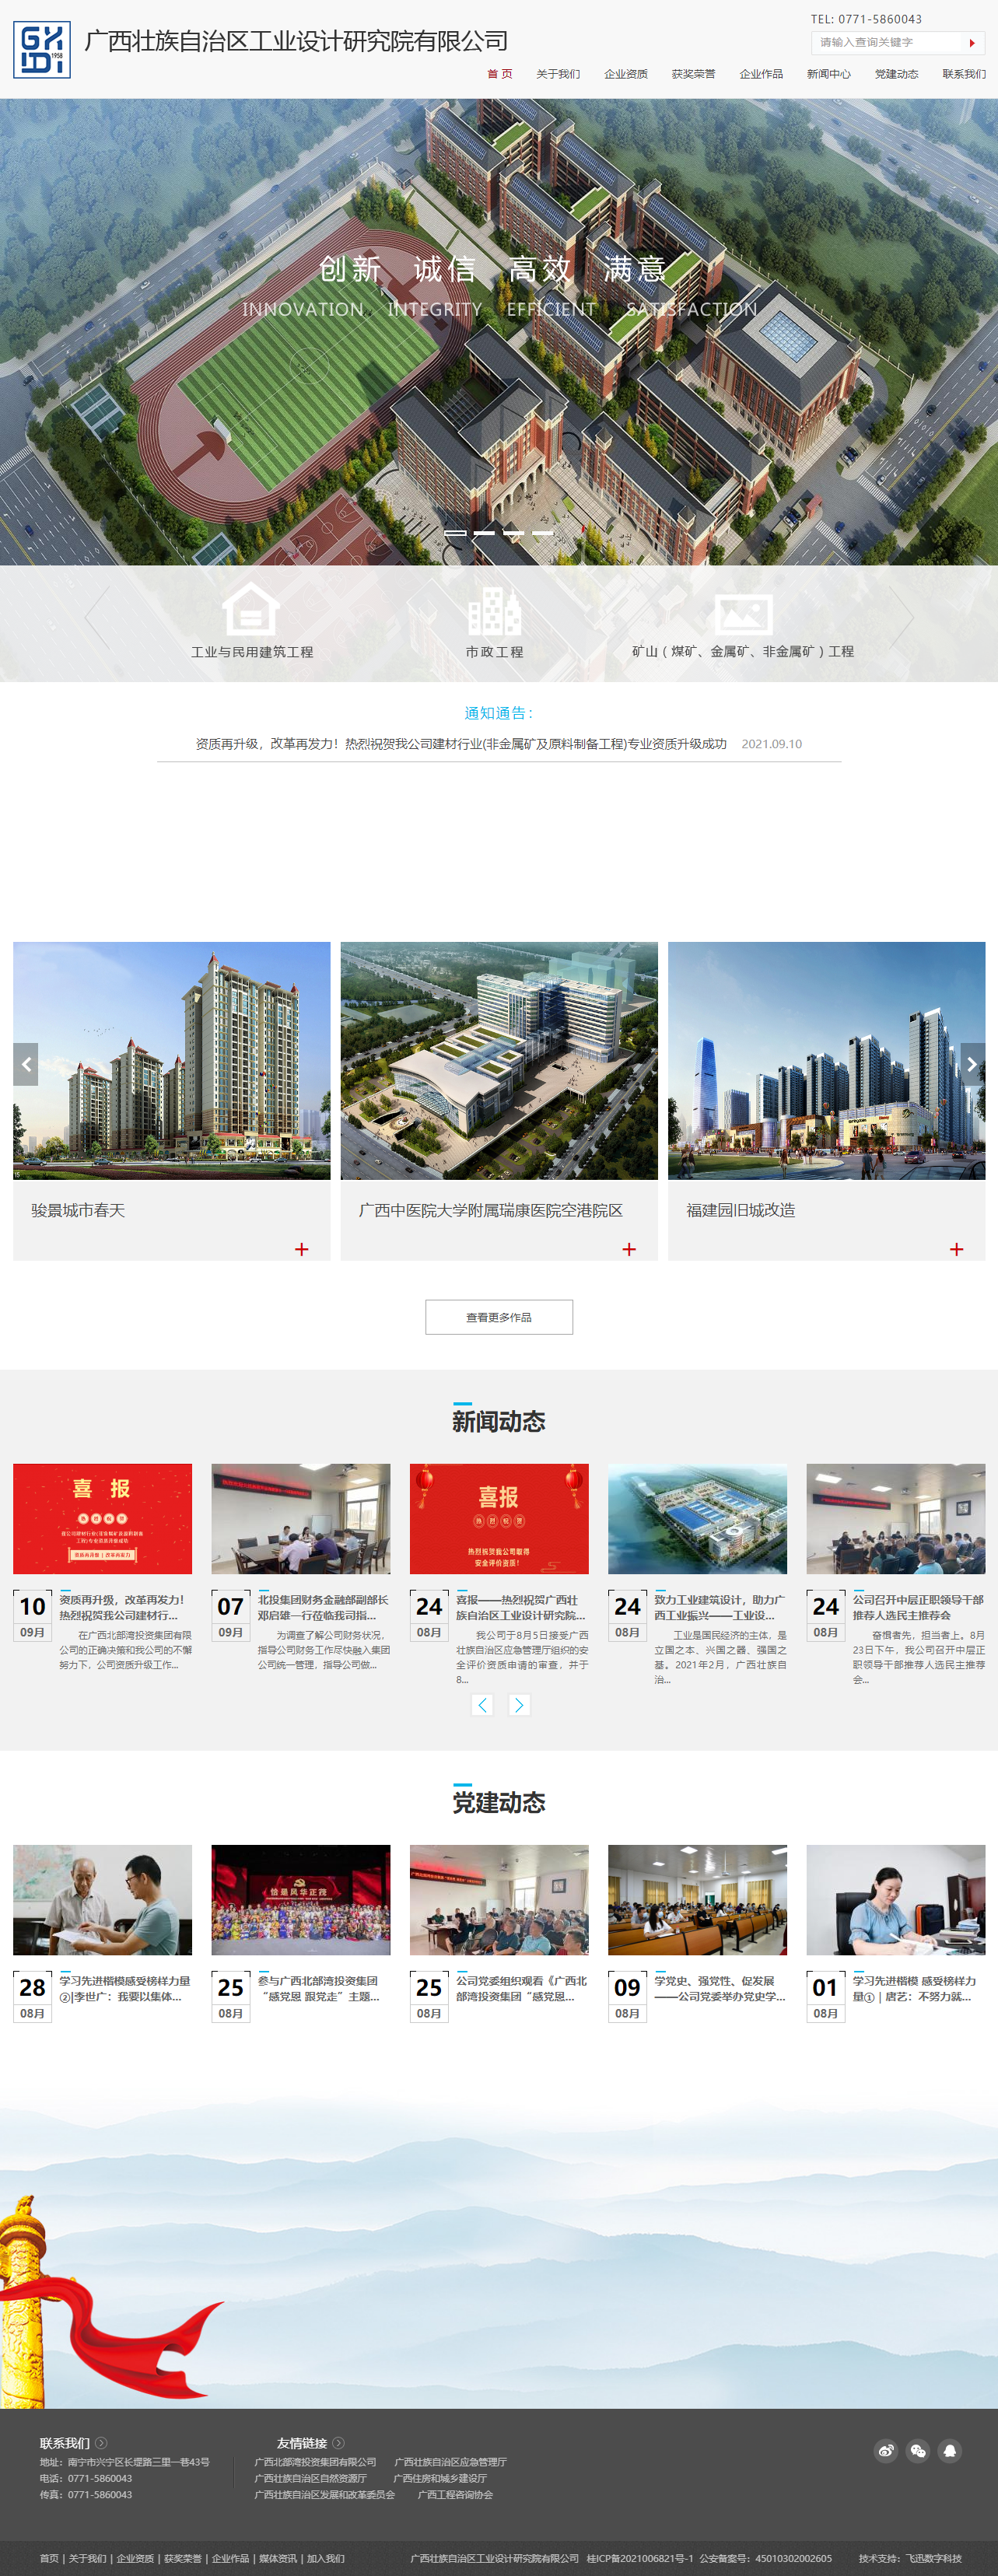 广西壮族自治区工业设计研究院有限公司网站案例